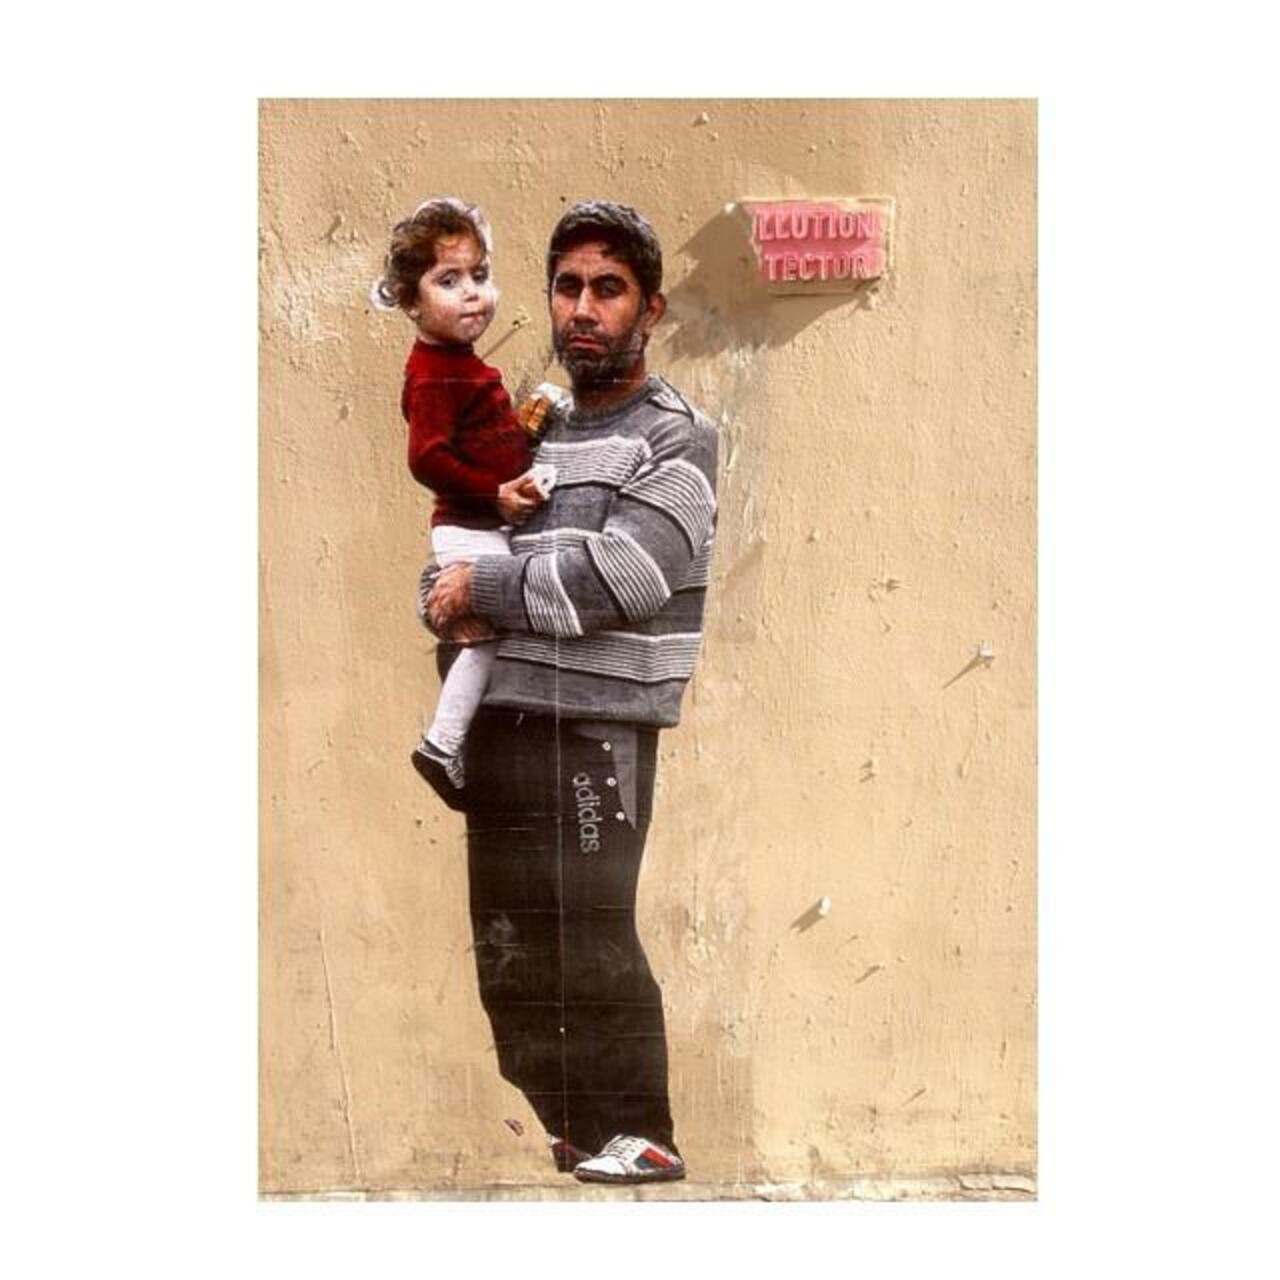 #Paris #graffiti photo by @doyou.getme http://ift.tt/1VpG5cS #StreetArt http://t.co/yA2fg1ufiu